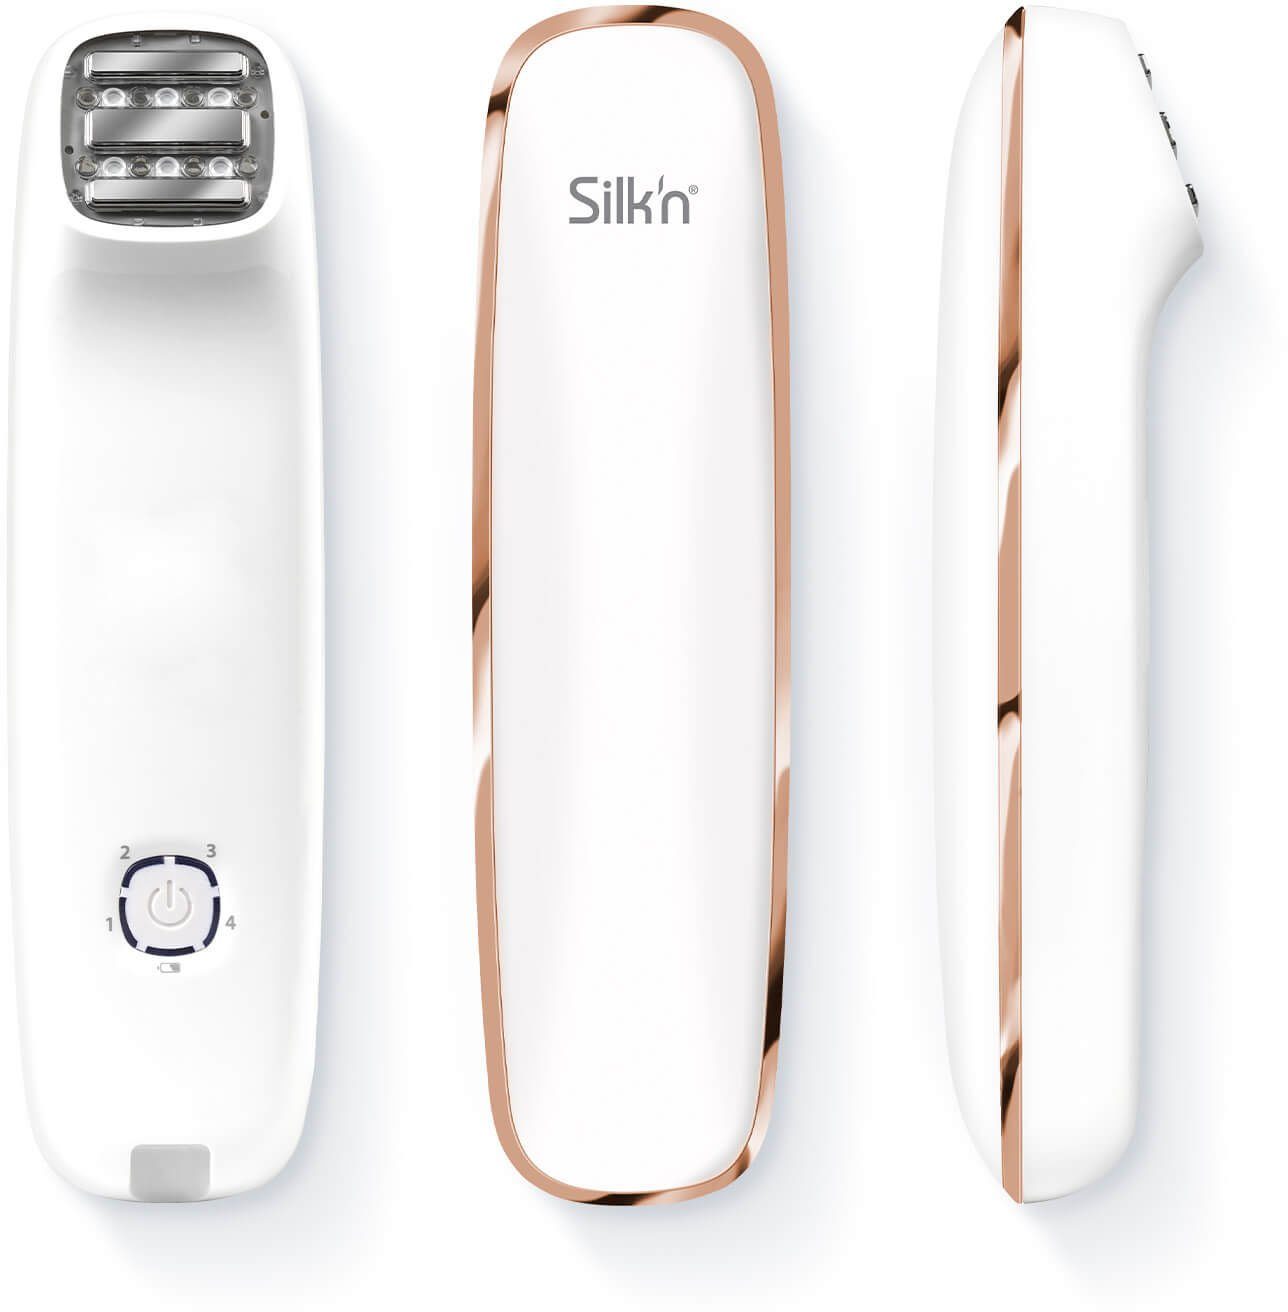 Silk'n Anti-Aging-Gerät Essential, kabellos Slider 3-tlg., FaceTite Adapter, Gel, Intense Set, Hyaluronic Nourishing Serum, Hyaluronic